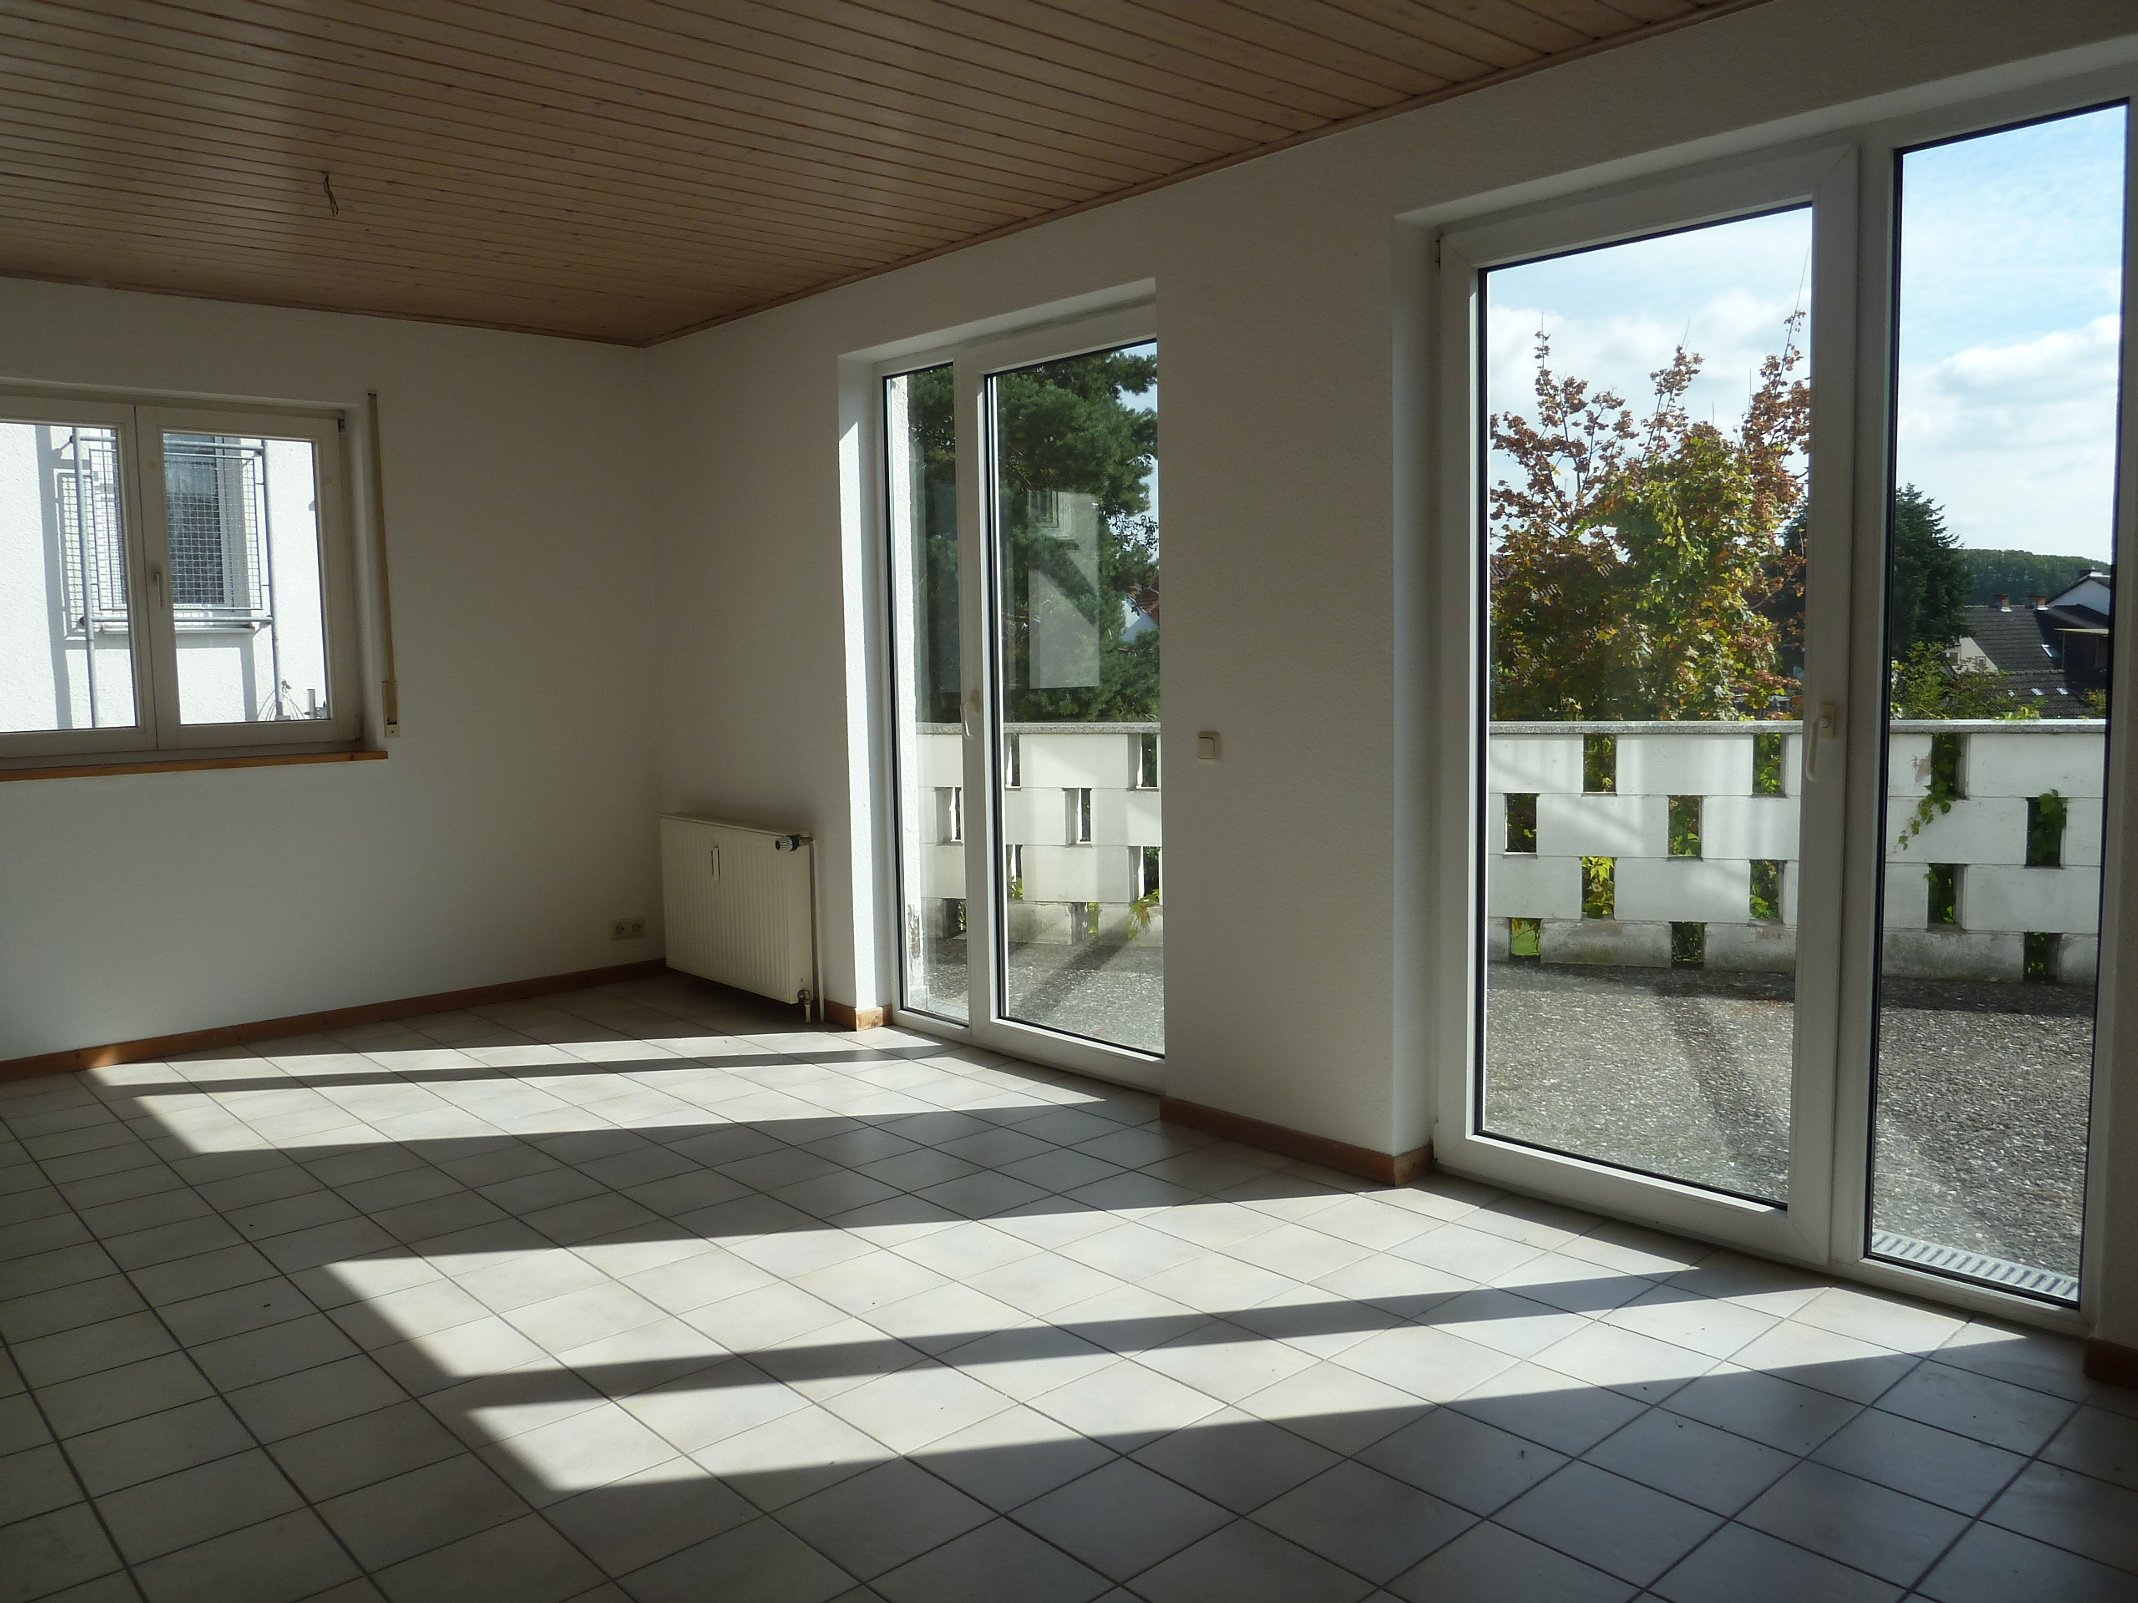 Gut vermietete Maisonette-Wohnung mit großer Sonnenterrasse im Herzen von Reinheim bei Degenhardt Immobilien